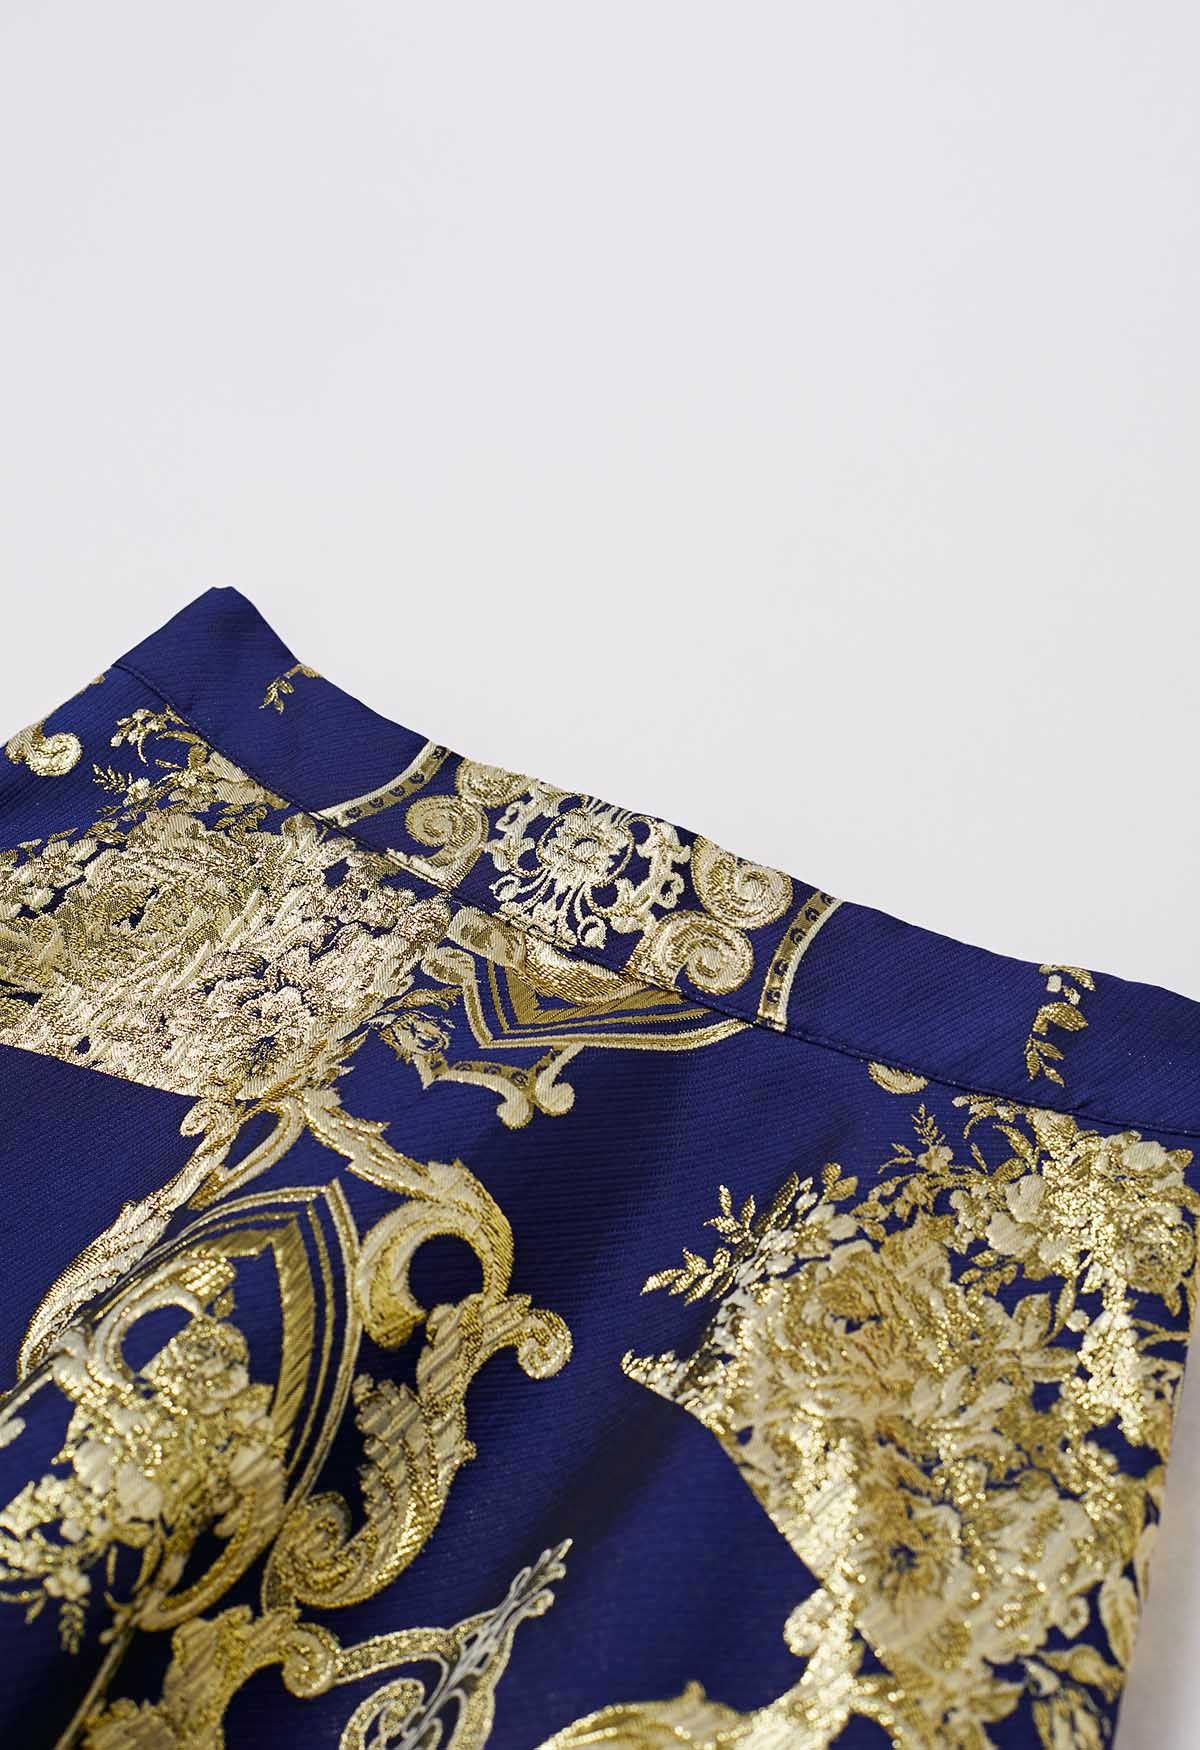 Glamorous - Jupe longue en jacquard baroque à fils métallisés - Bleu marine